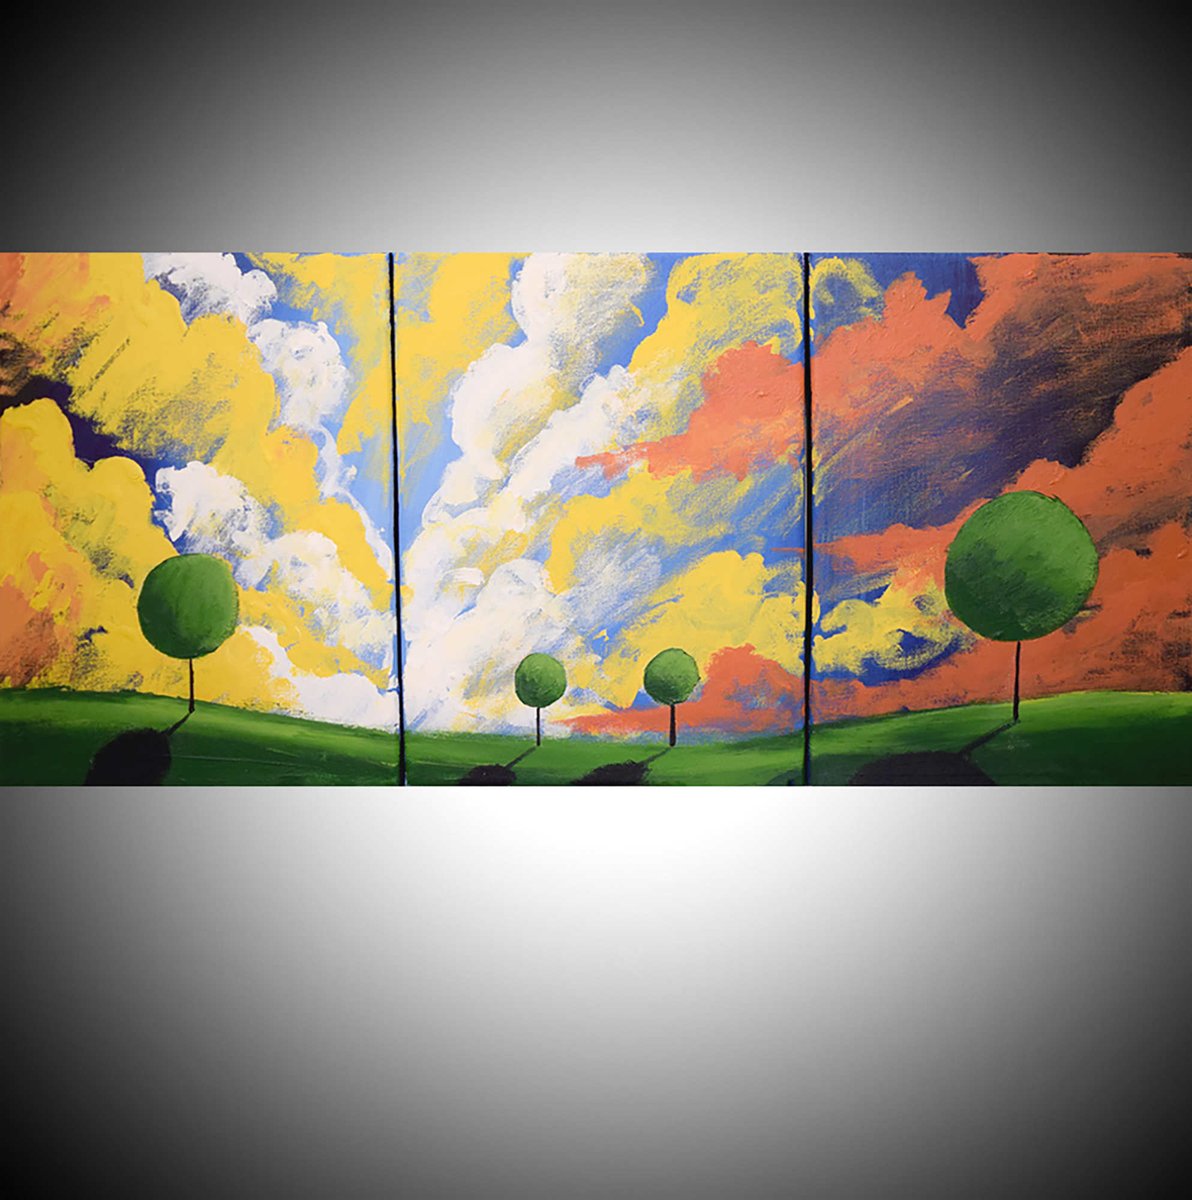 Cloudscape Alpha tuppu.net/238a871c #painting #original #LatestPaintings